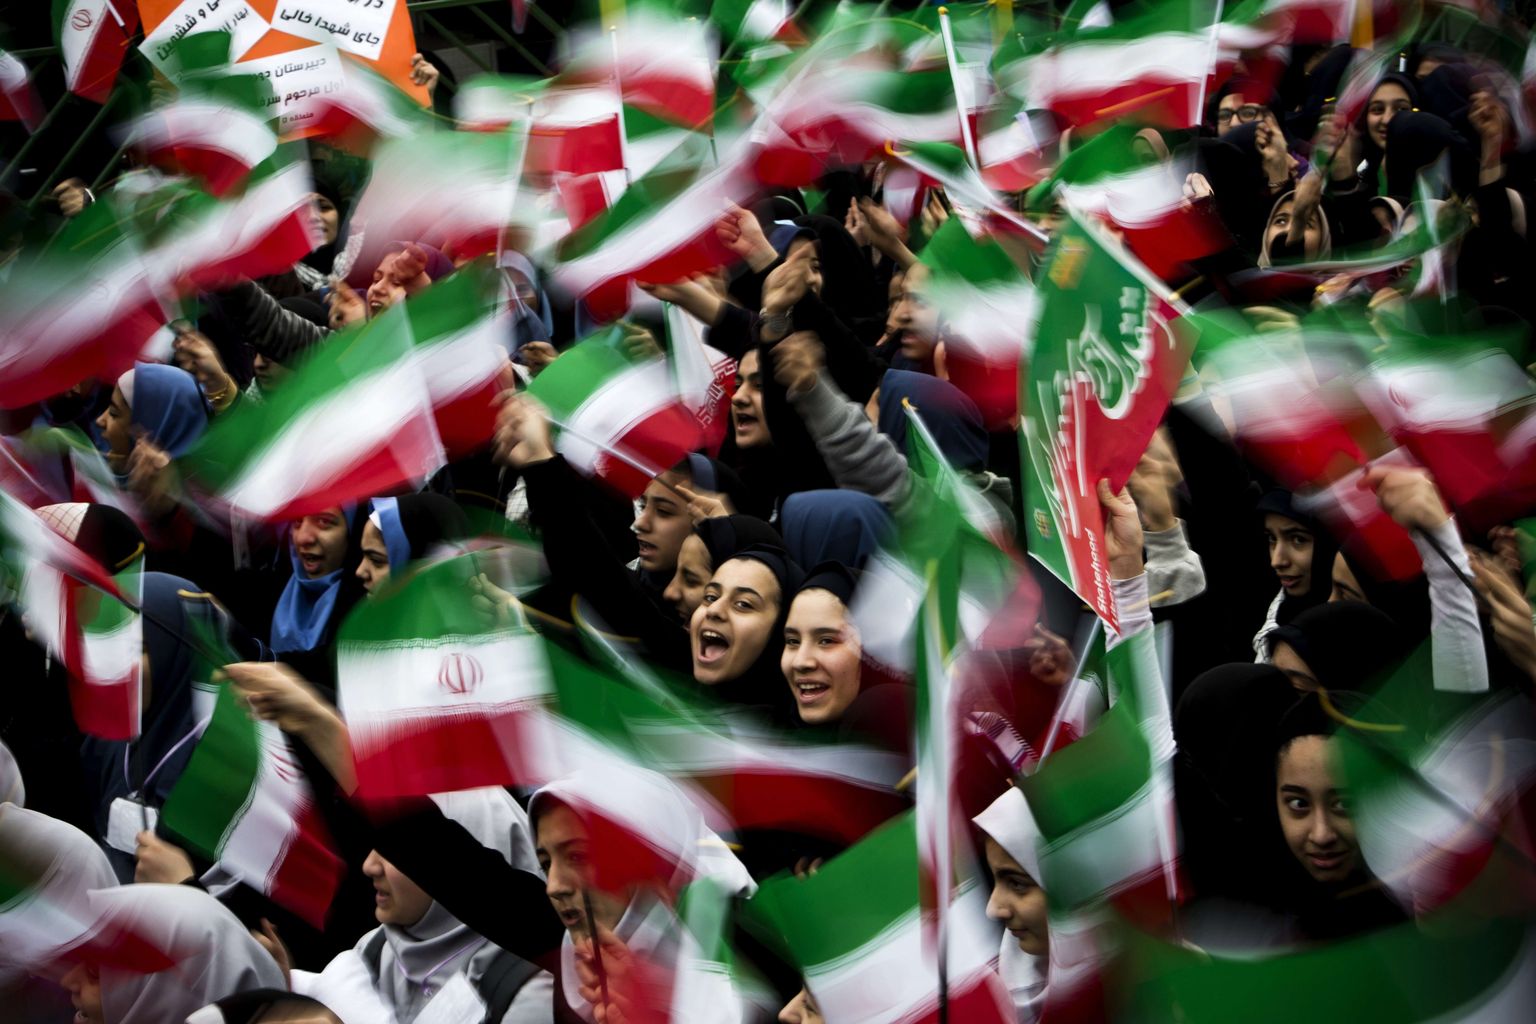 Iraani koolitüdrukud lehvitavad lippudega Islamirevolutsiooni 36. aastapäeval Teheranis. Pilt on illustratiivne.